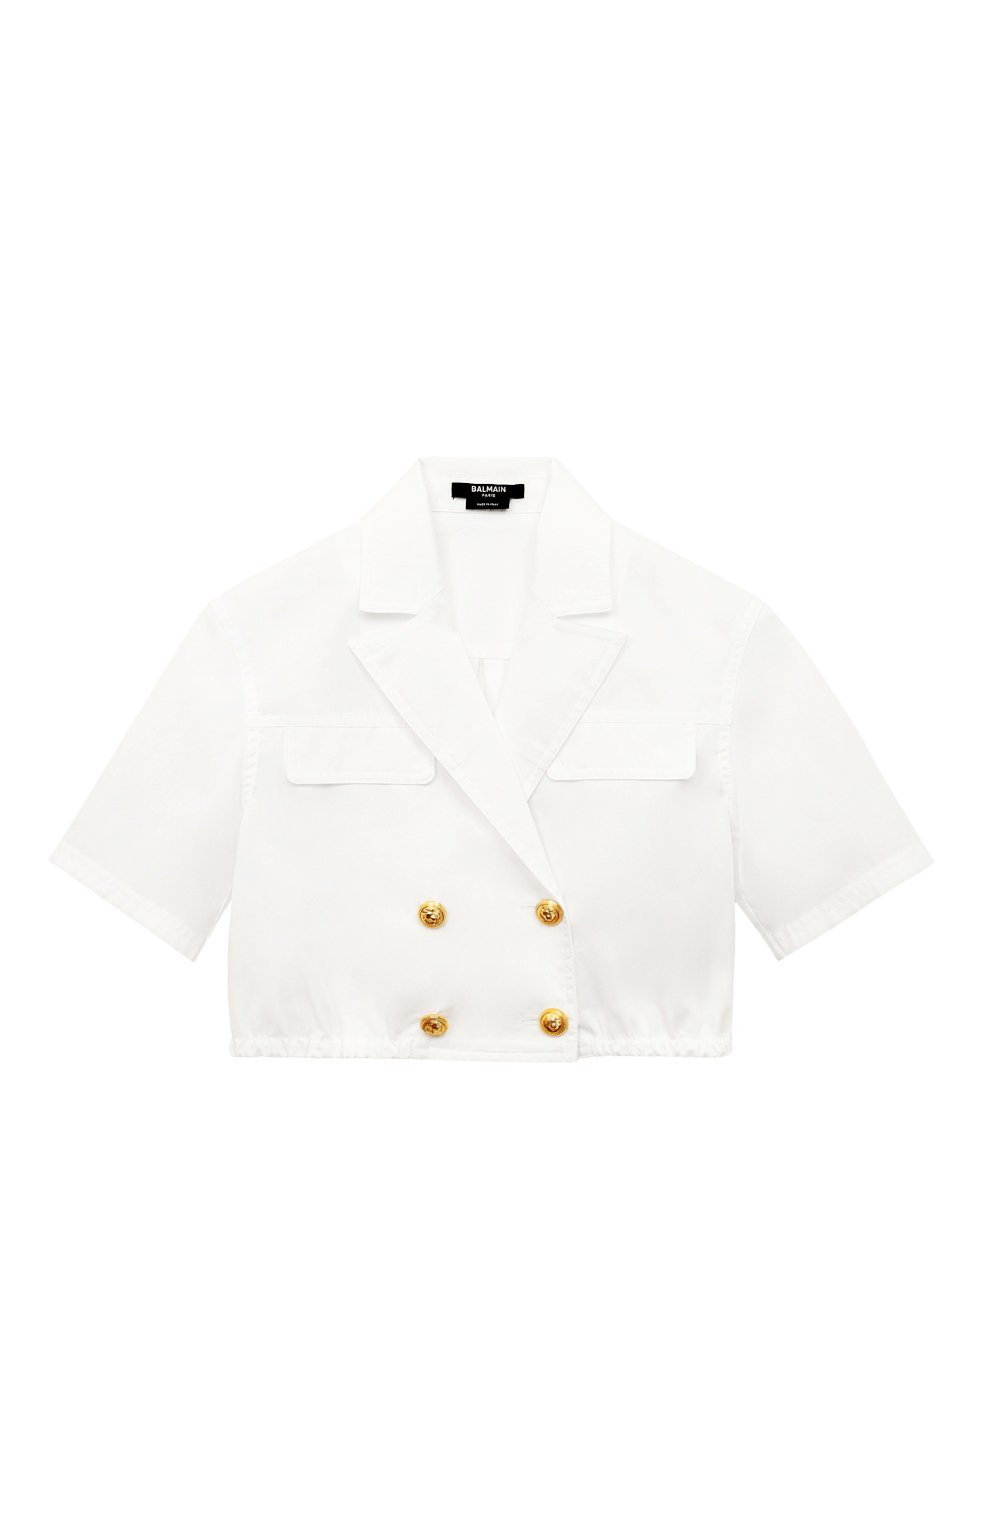 Блузы Balmain, Укороченная блузка Balmain, Италия, Белый, Хлопок: 100%;, 13371669  - купить